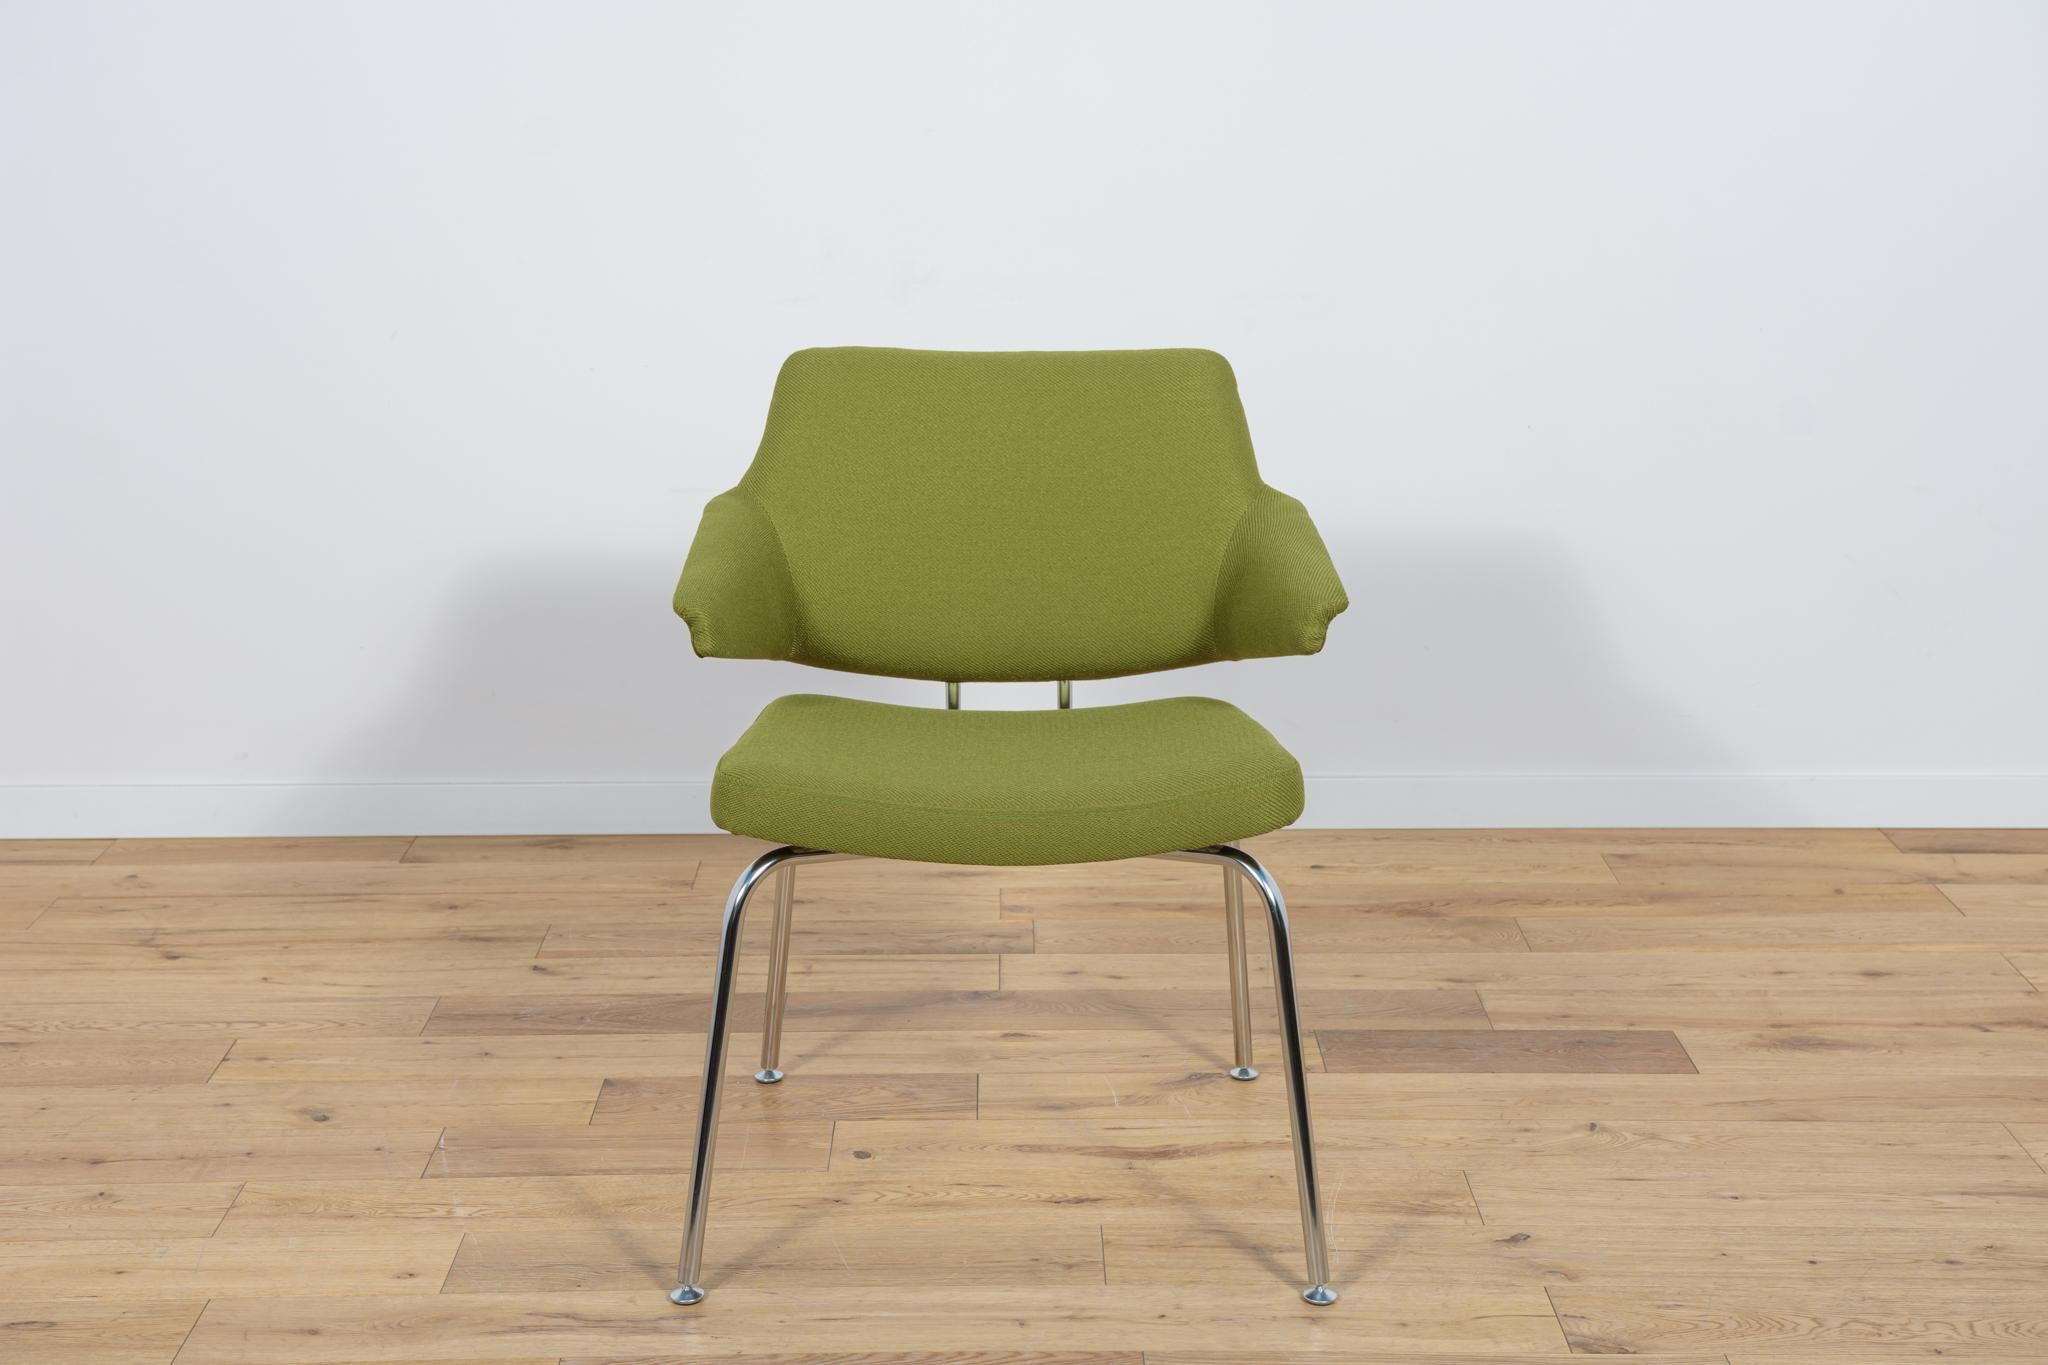 Konferenzsessel, entworfen von Jacob Jensen für eine dänische Fabrik von Duba in Dänemark in den 1960er Jahren. Der Sessel wurde einer umfassenden Revision unterzogen.  Renovierung. Der Innenraum wurde mit hochwertigem, schwer entflammbarem grünem